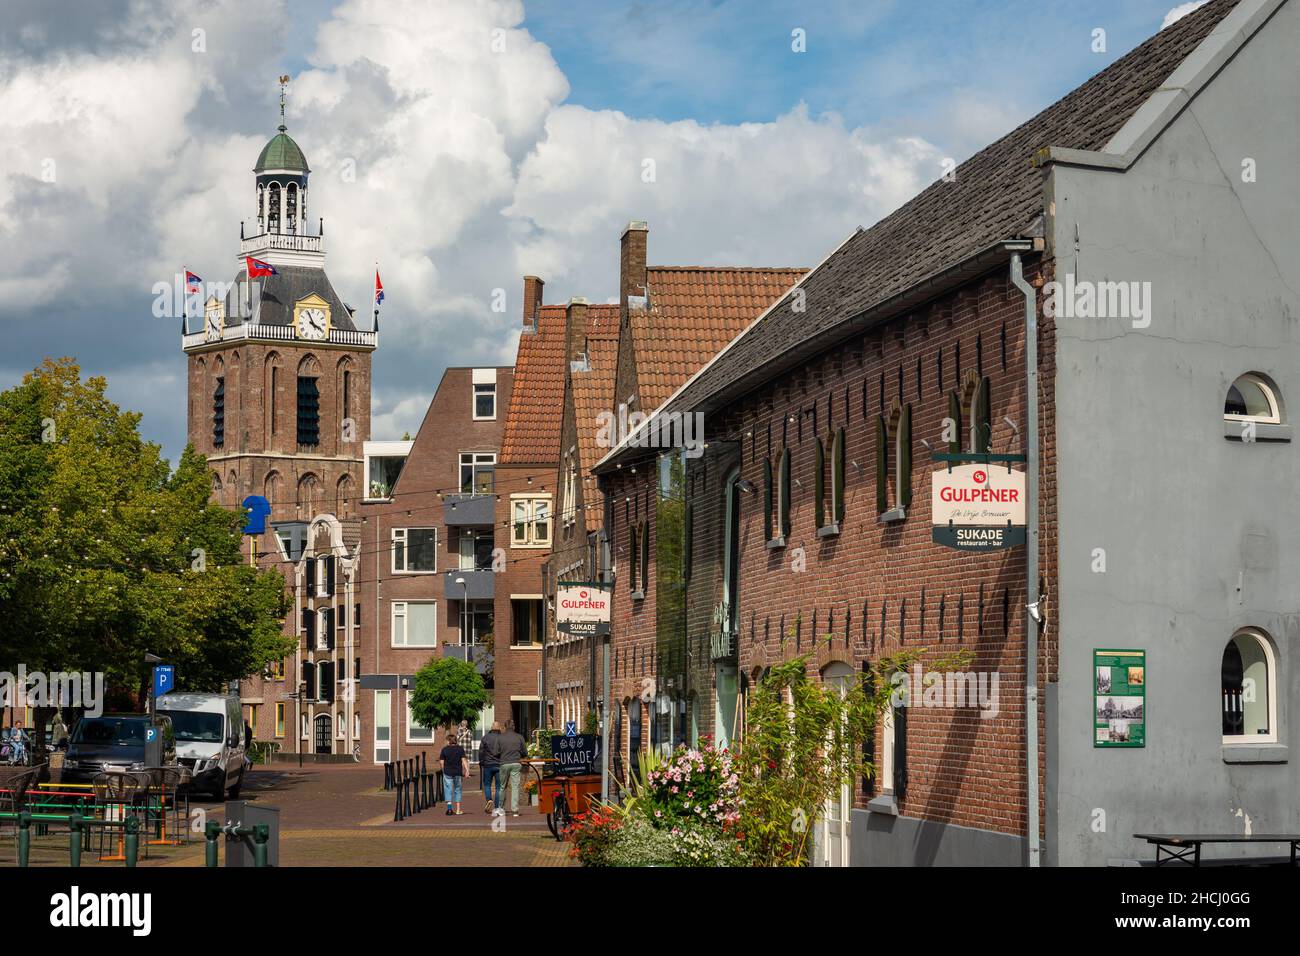 Meppel, province de Drenthe, pays-Bas, 05.09.2020, paysage de rue de Meppel avec la tour de l'église historique Maria Banque D'Images